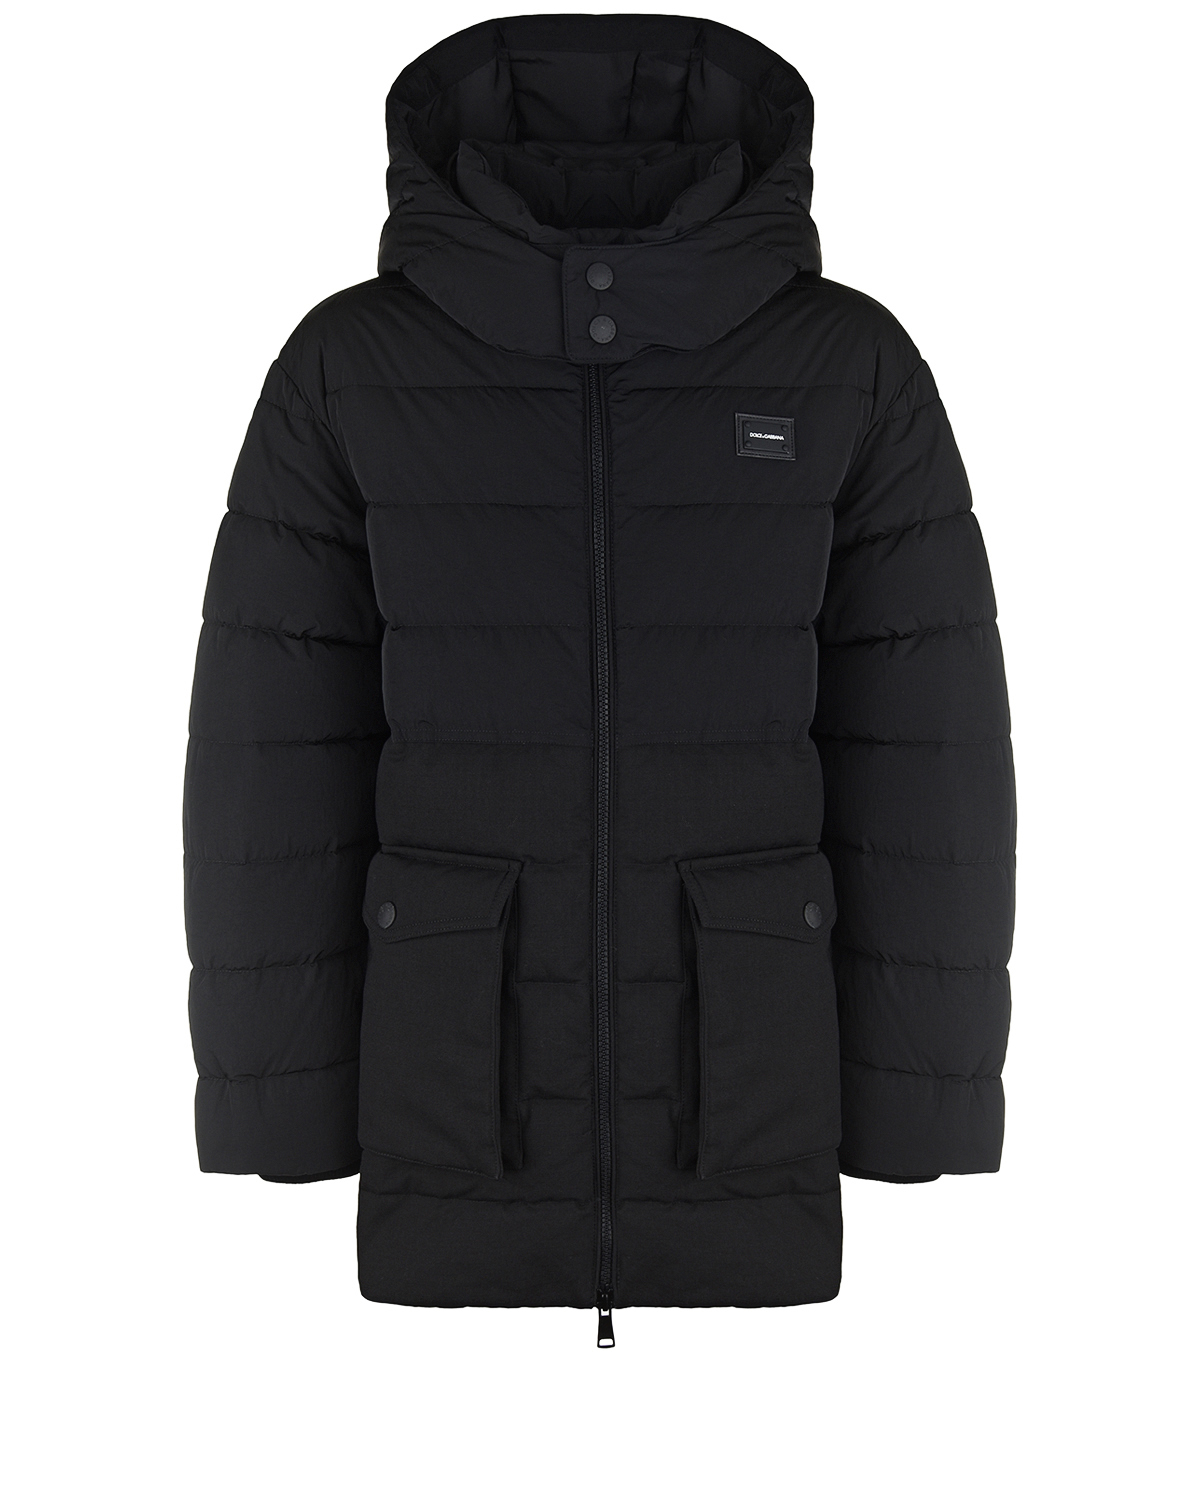 Куртка-пуховик с накладными карманами Dolce&Gabbana детская, размер 152, цвет черный - фото 1